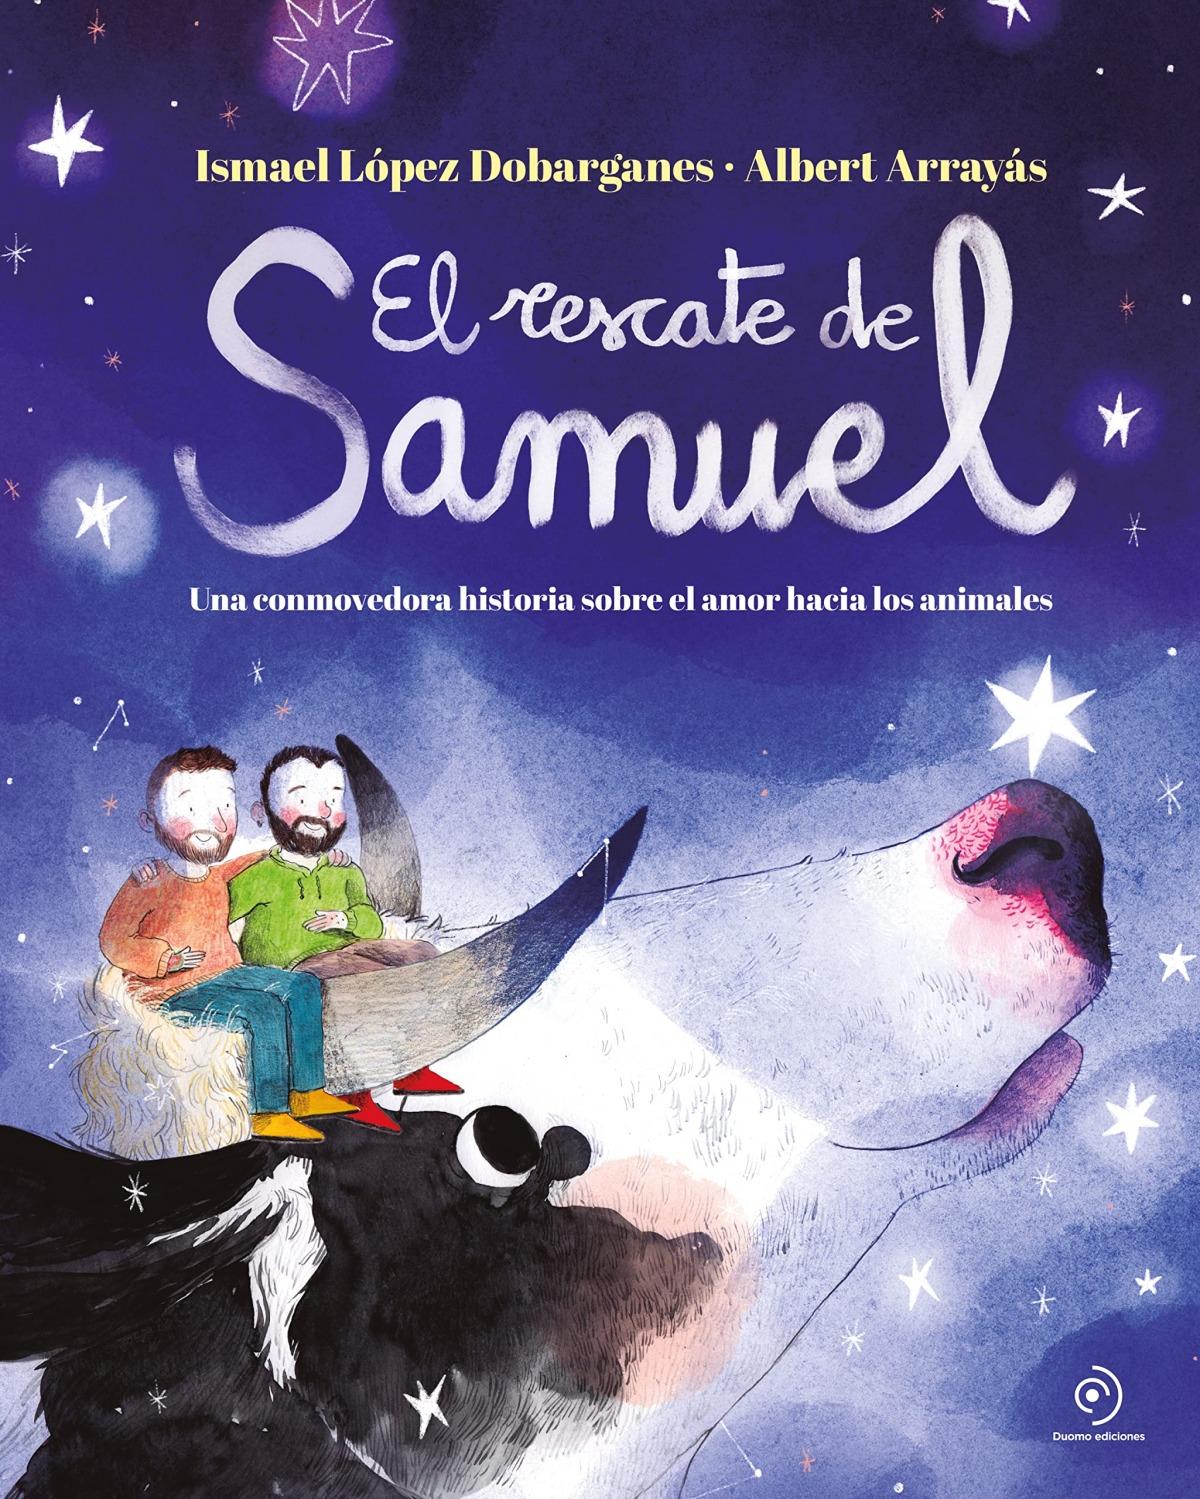 Rescate de Samuel, eL "Una conmovedora historia sobre el amor hacia los animales"